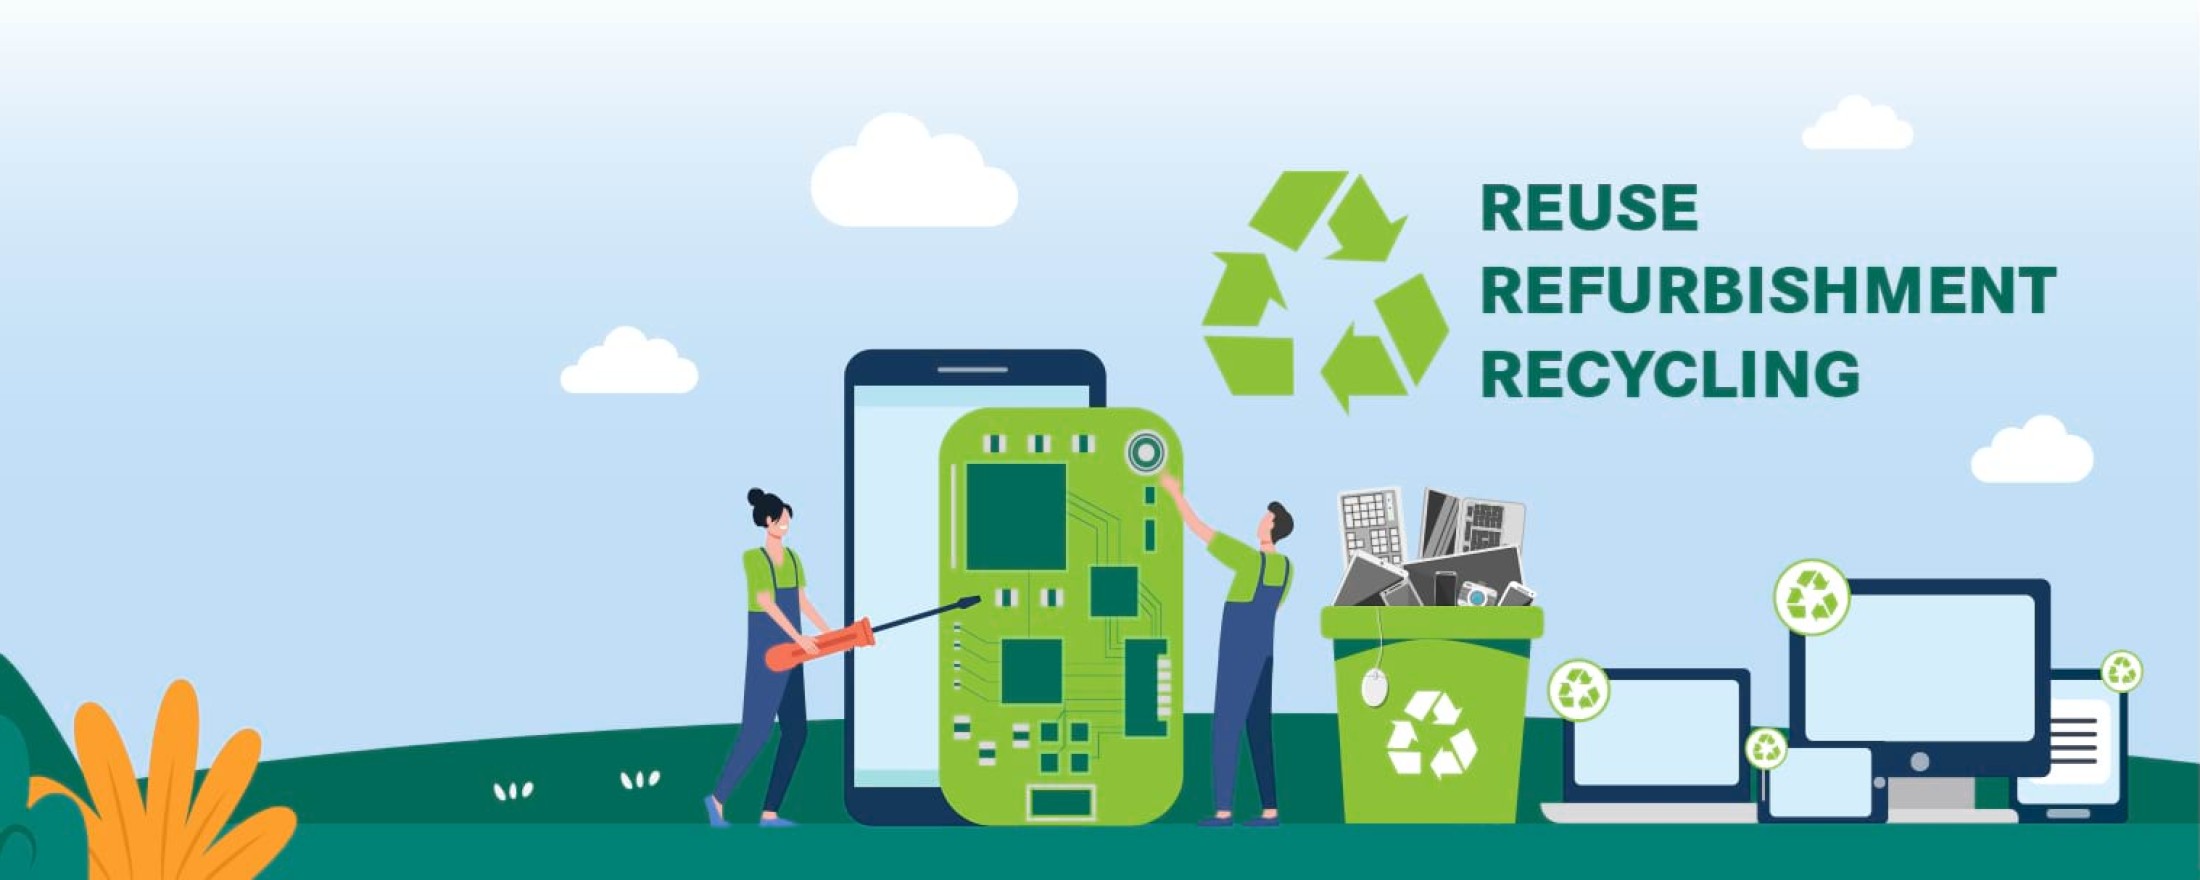 Einsparung von Rohstoffen durch Recycling, Reuse, Refurbishment, LCA, Life Cycle Assessment, Ökobilanzierung